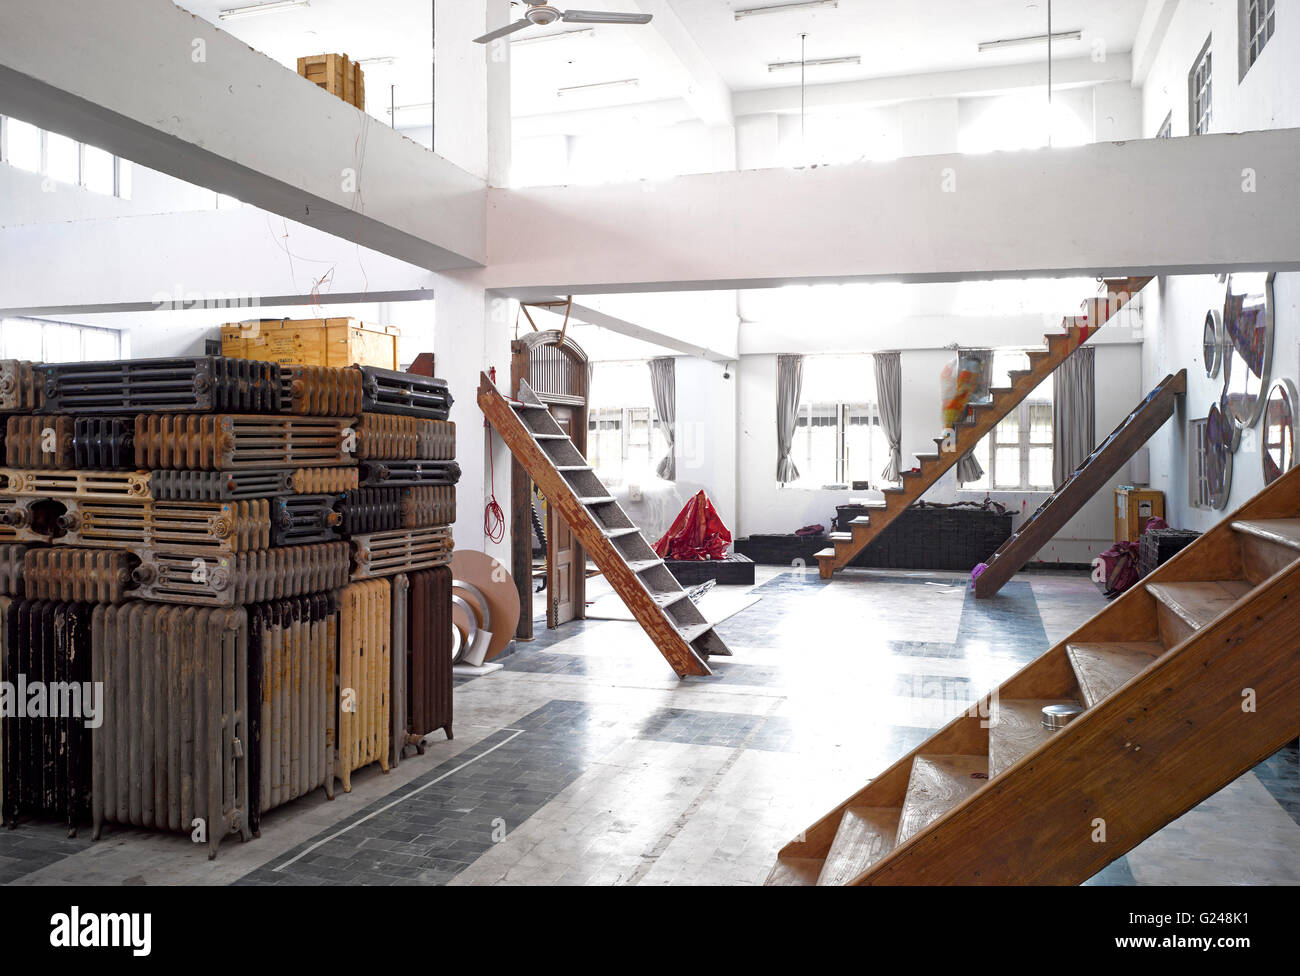 Studio intérieur avec différents escaliers. Bharti Kher Studio, Gurgaon, Inde. Architecte : NA, 2014. Banque D'Images